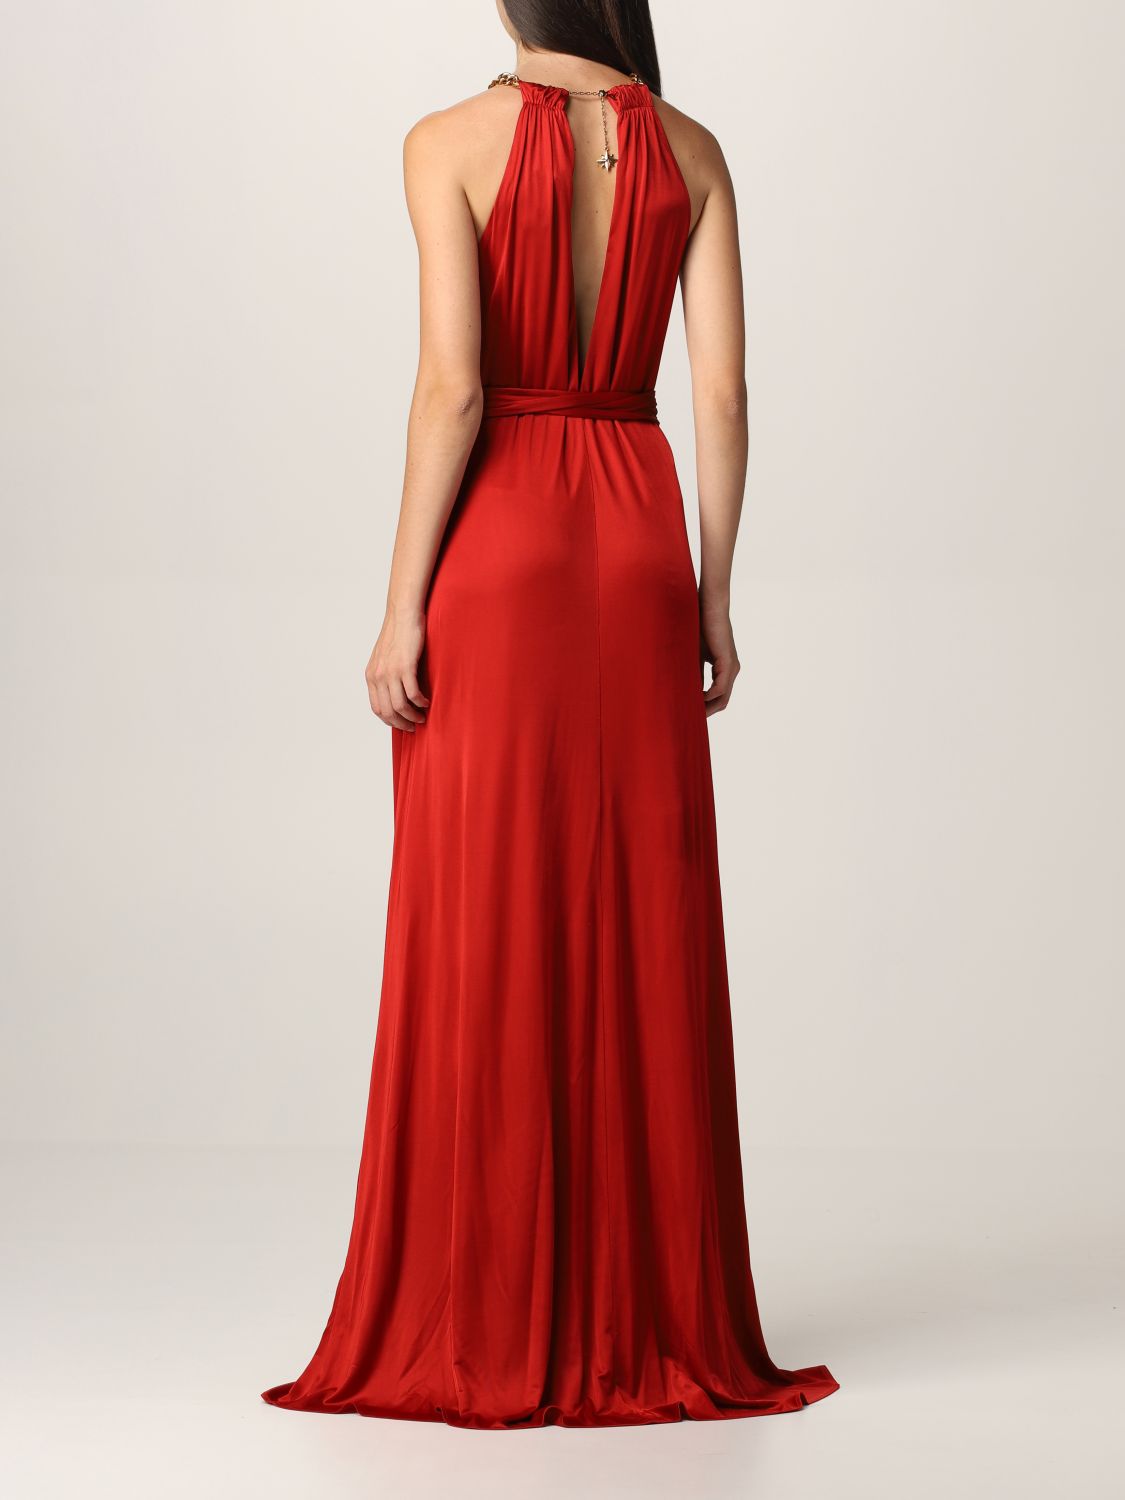 ROBERTO CAVALLI: dress for woman - Red | Roberto Cavalli dress MQT102 ...